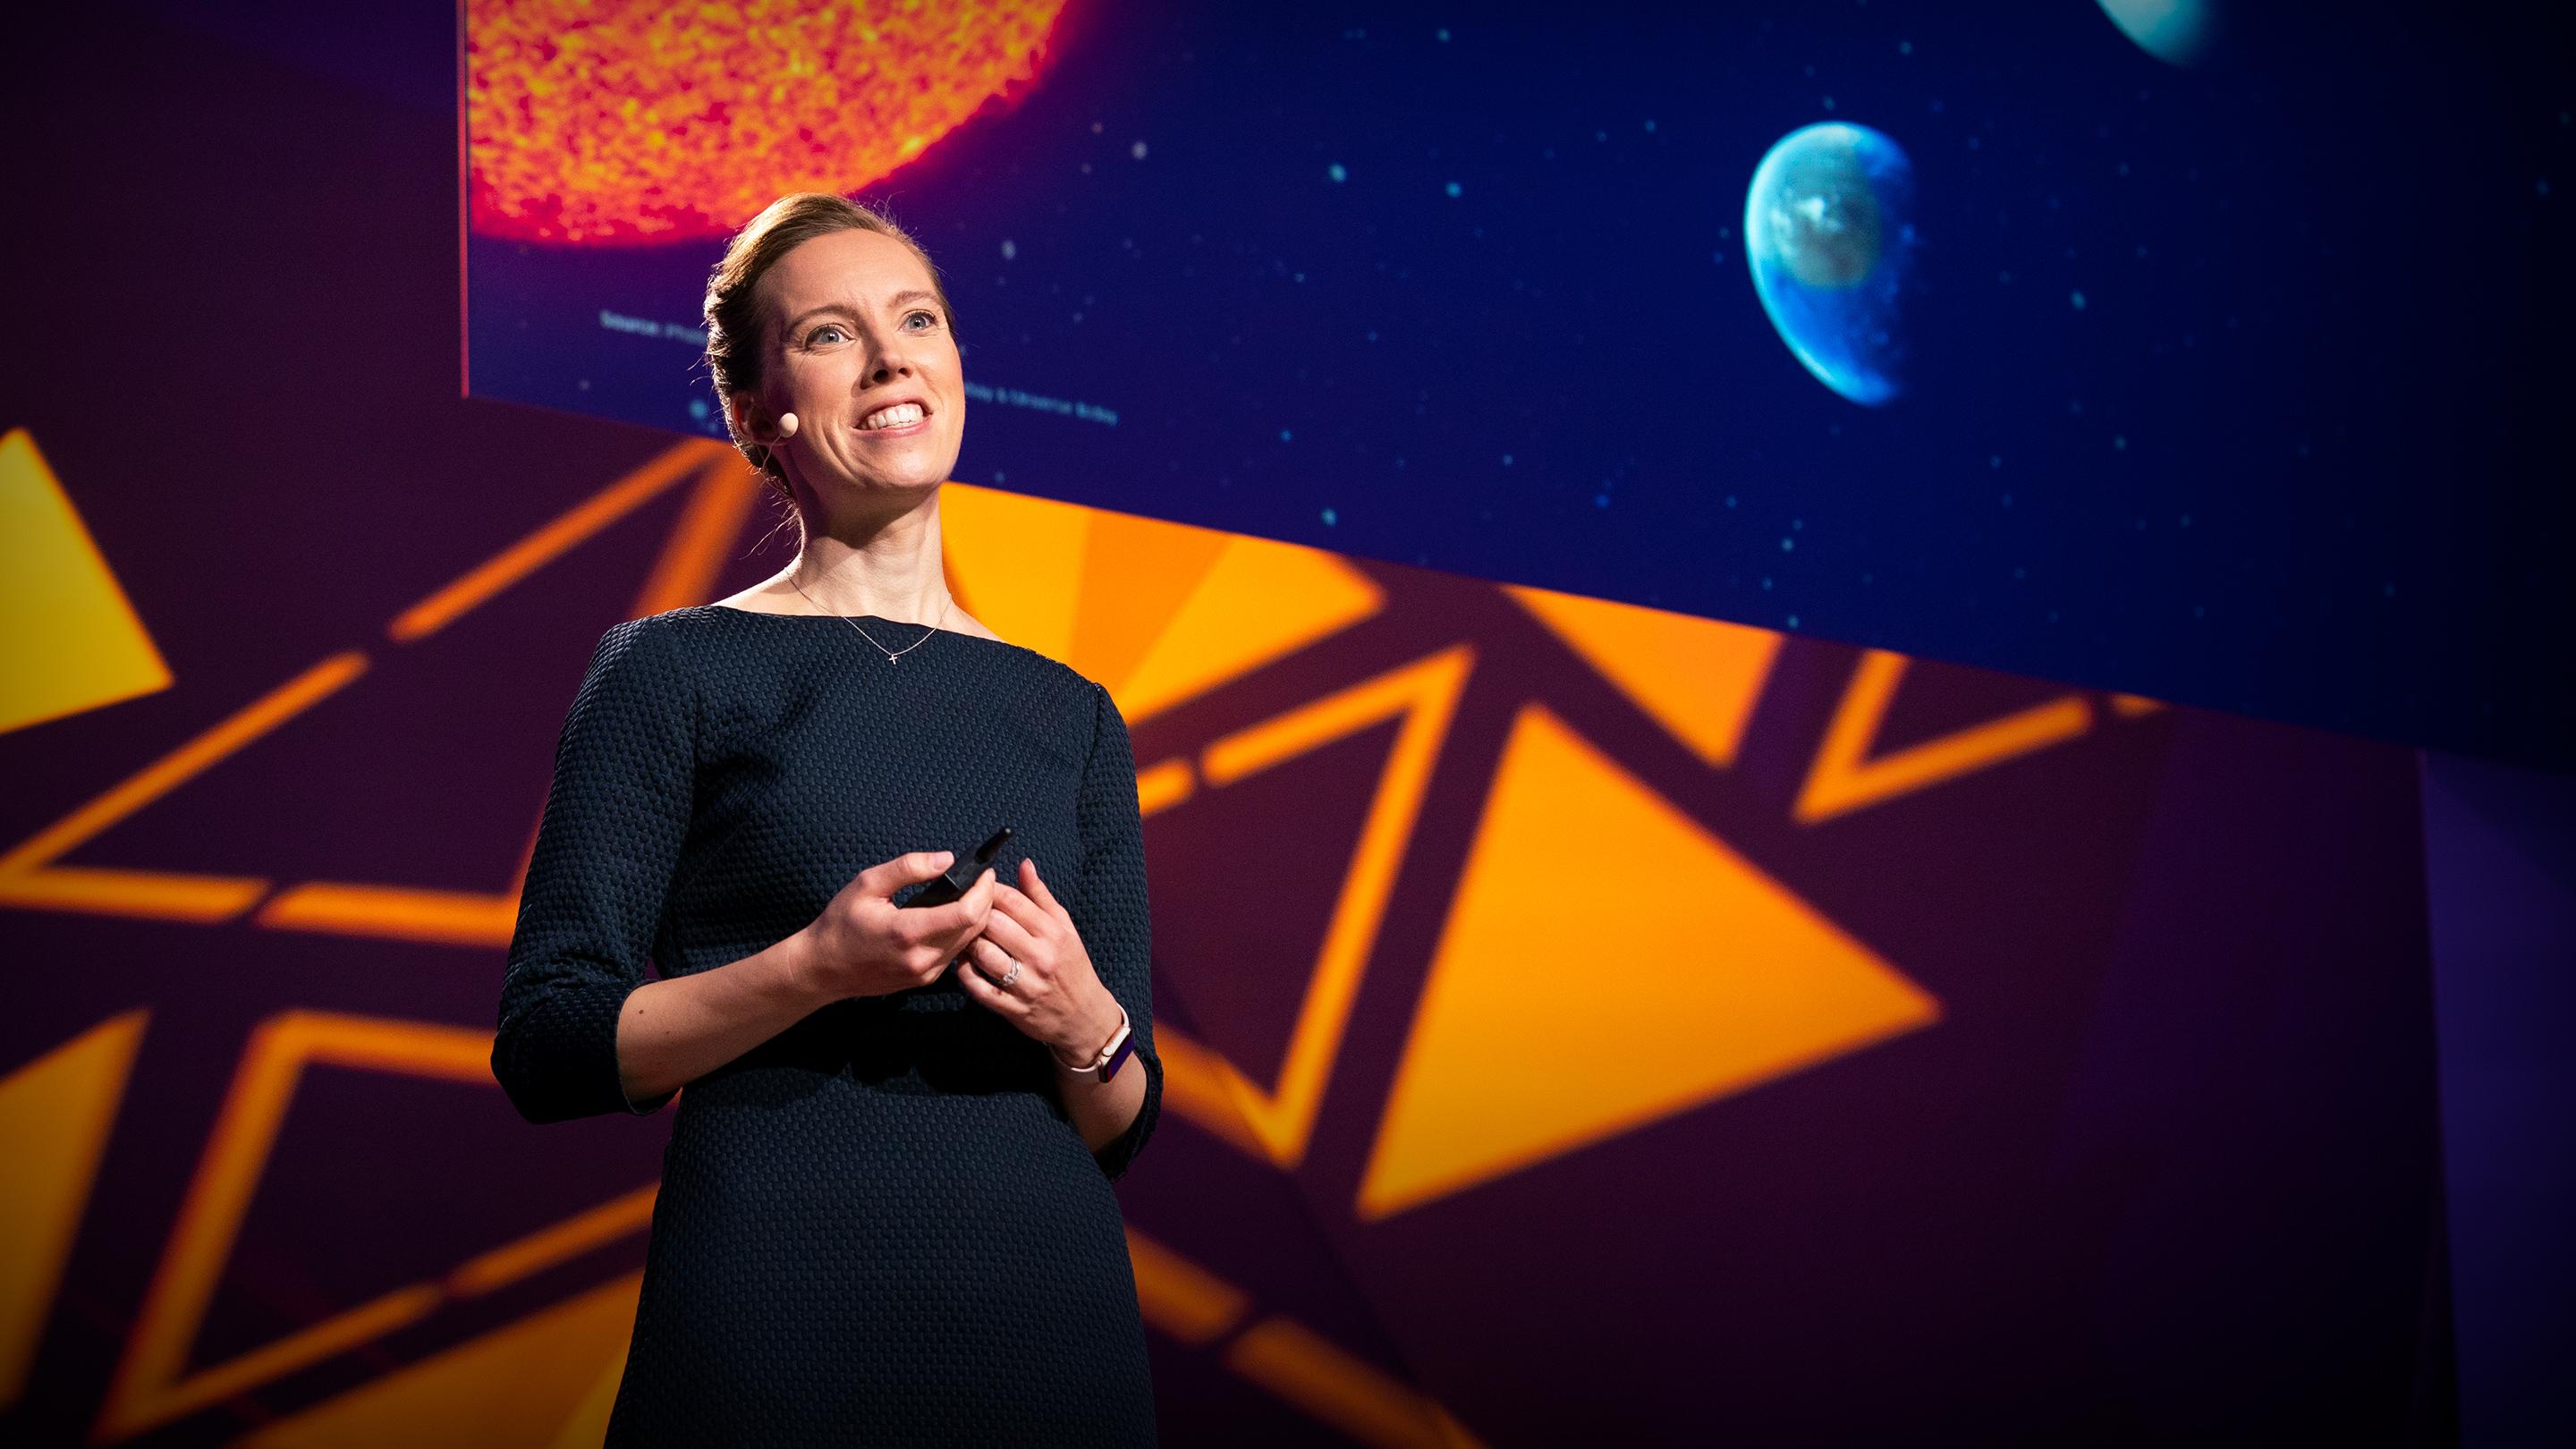 생명체가 존재하는 행성을 위한 은하 레시피 | 카린 오버그(Karin Öberg)